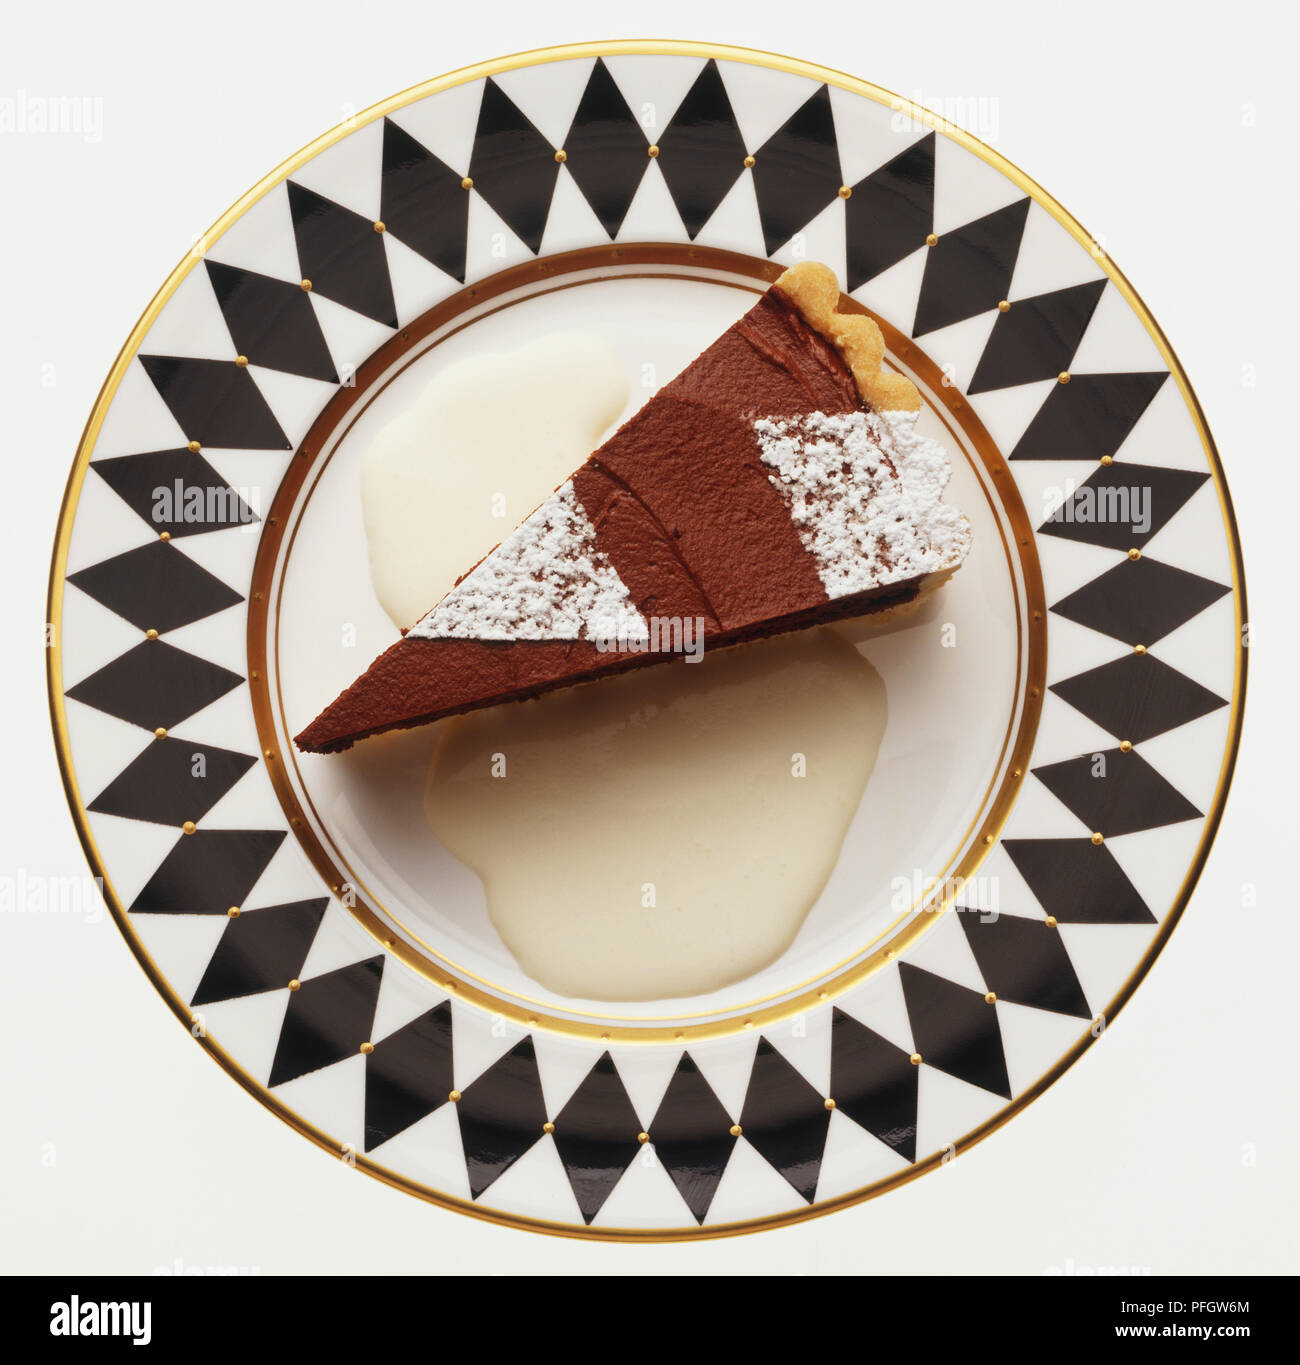 Ein Stück Schokolade Torte mit Puderzucker bestreut, serviert mit Creme auf einem dekorativen Schwarz-weiß gemusterten Platte, Ansicht von oben Stockfoto